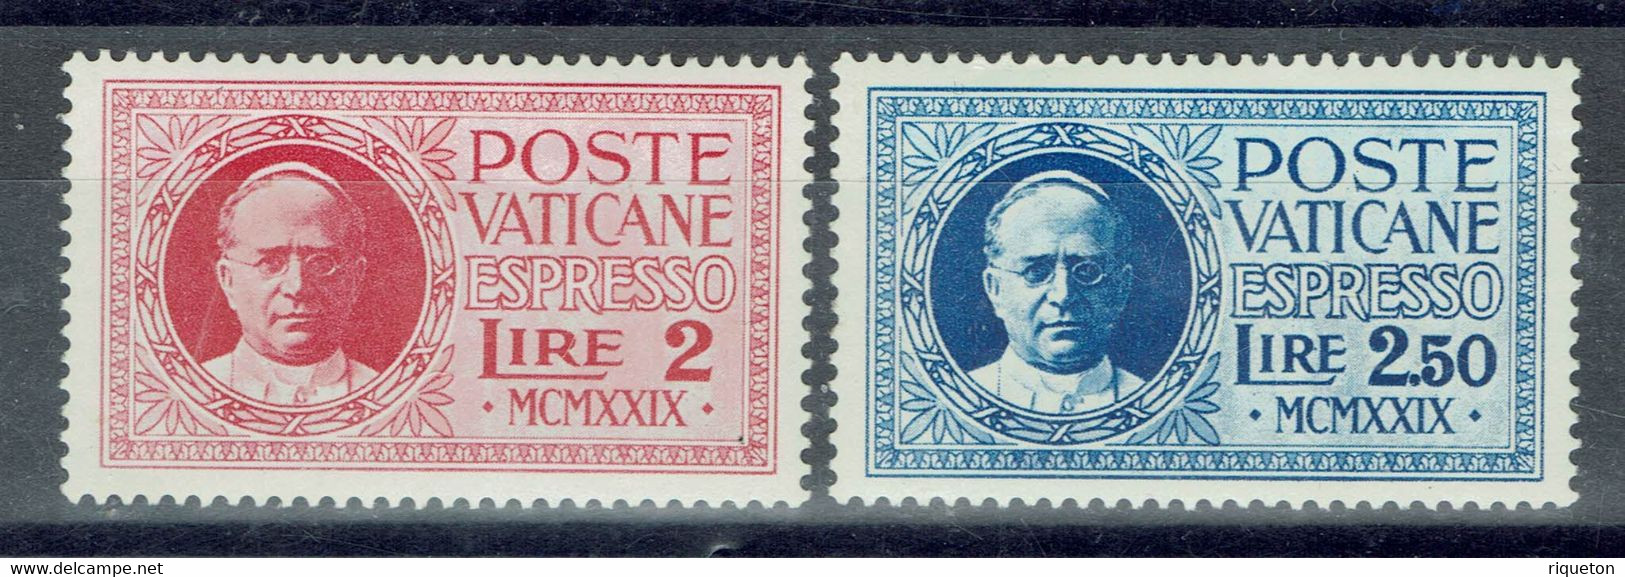 Vatican - 1929 - Timbres Pour Lettres Par Exprès - N° 1 & 2 - Neufs - XX - MNH - - Urgente